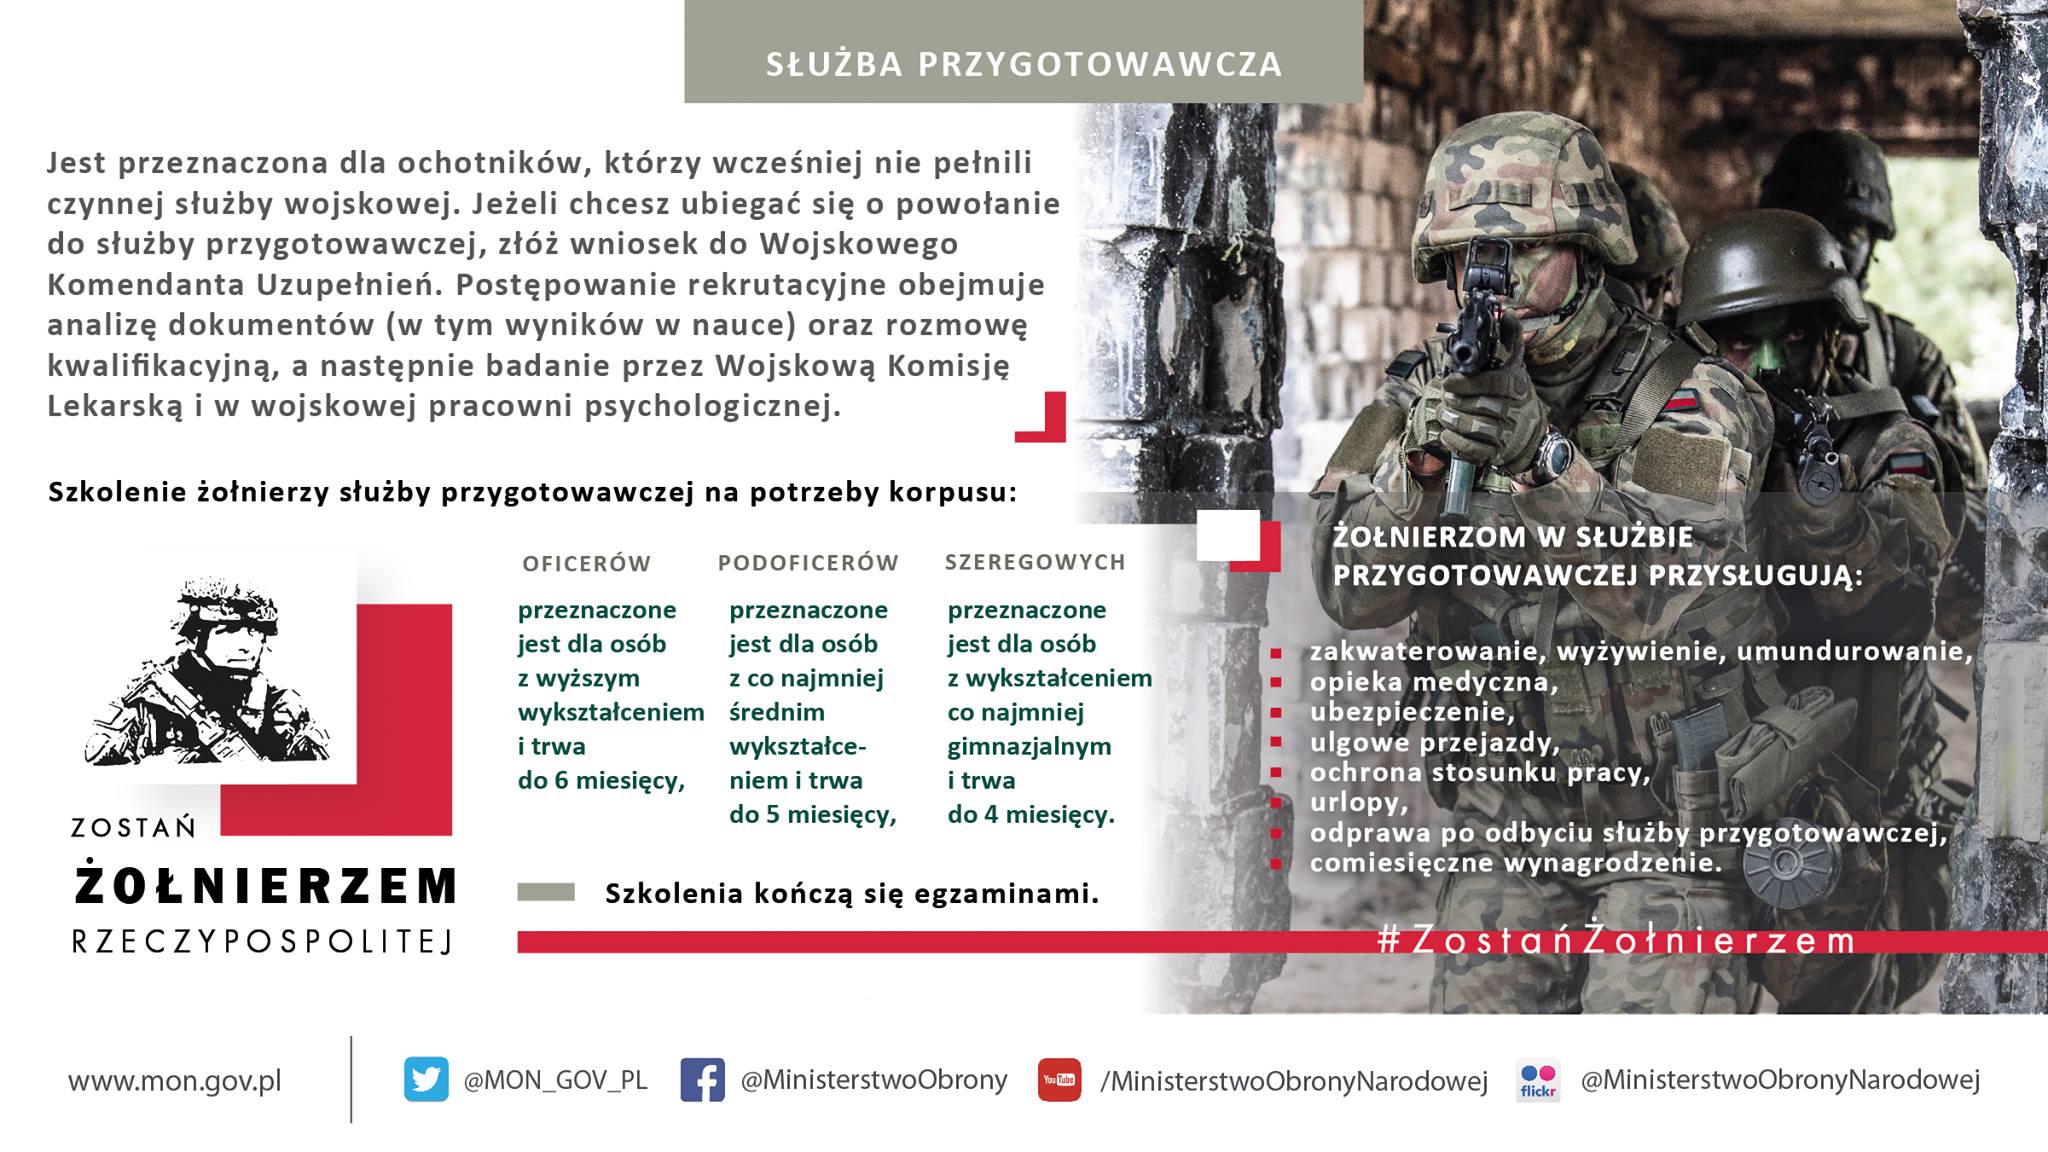 Trwa nabór na 1 turnus służby przygotowawczej w 2019 r. – Wojskowa Komenda Uzupełnień w Oświęcimiu zaprasza